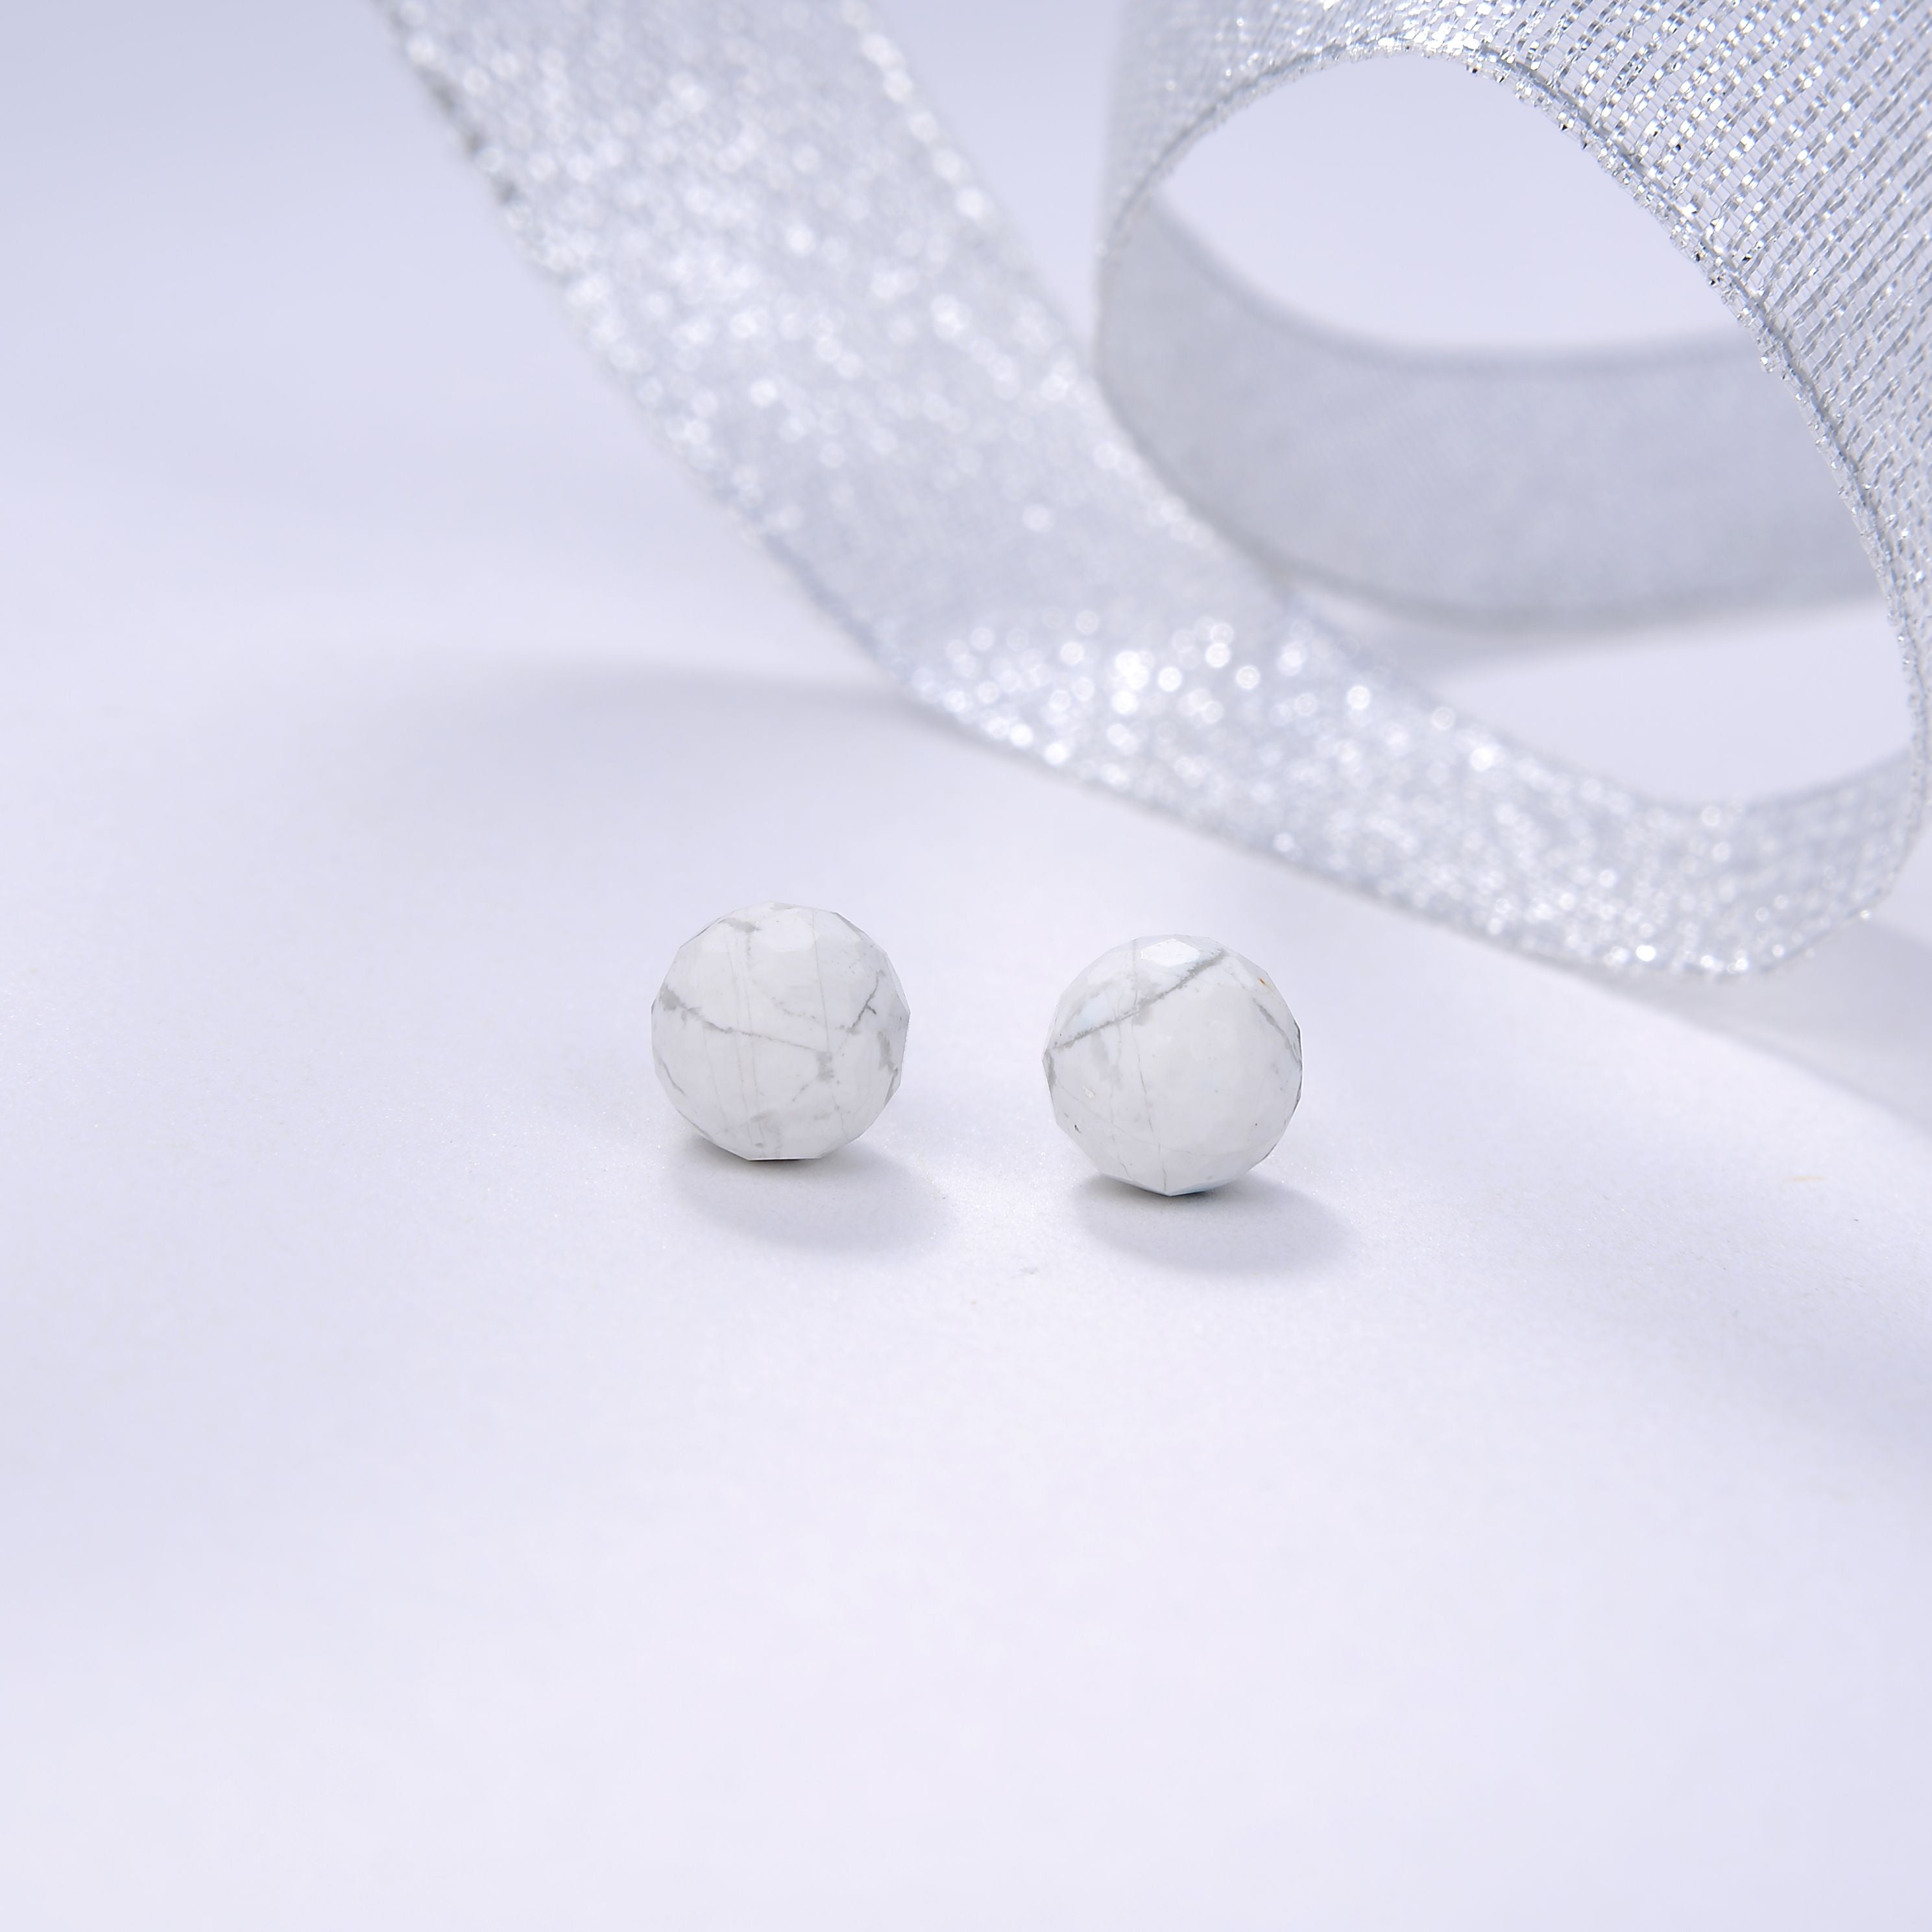 Beritafon 925 Sterling Silver White Howalite Gemstones Stud Earring for Women or Girls